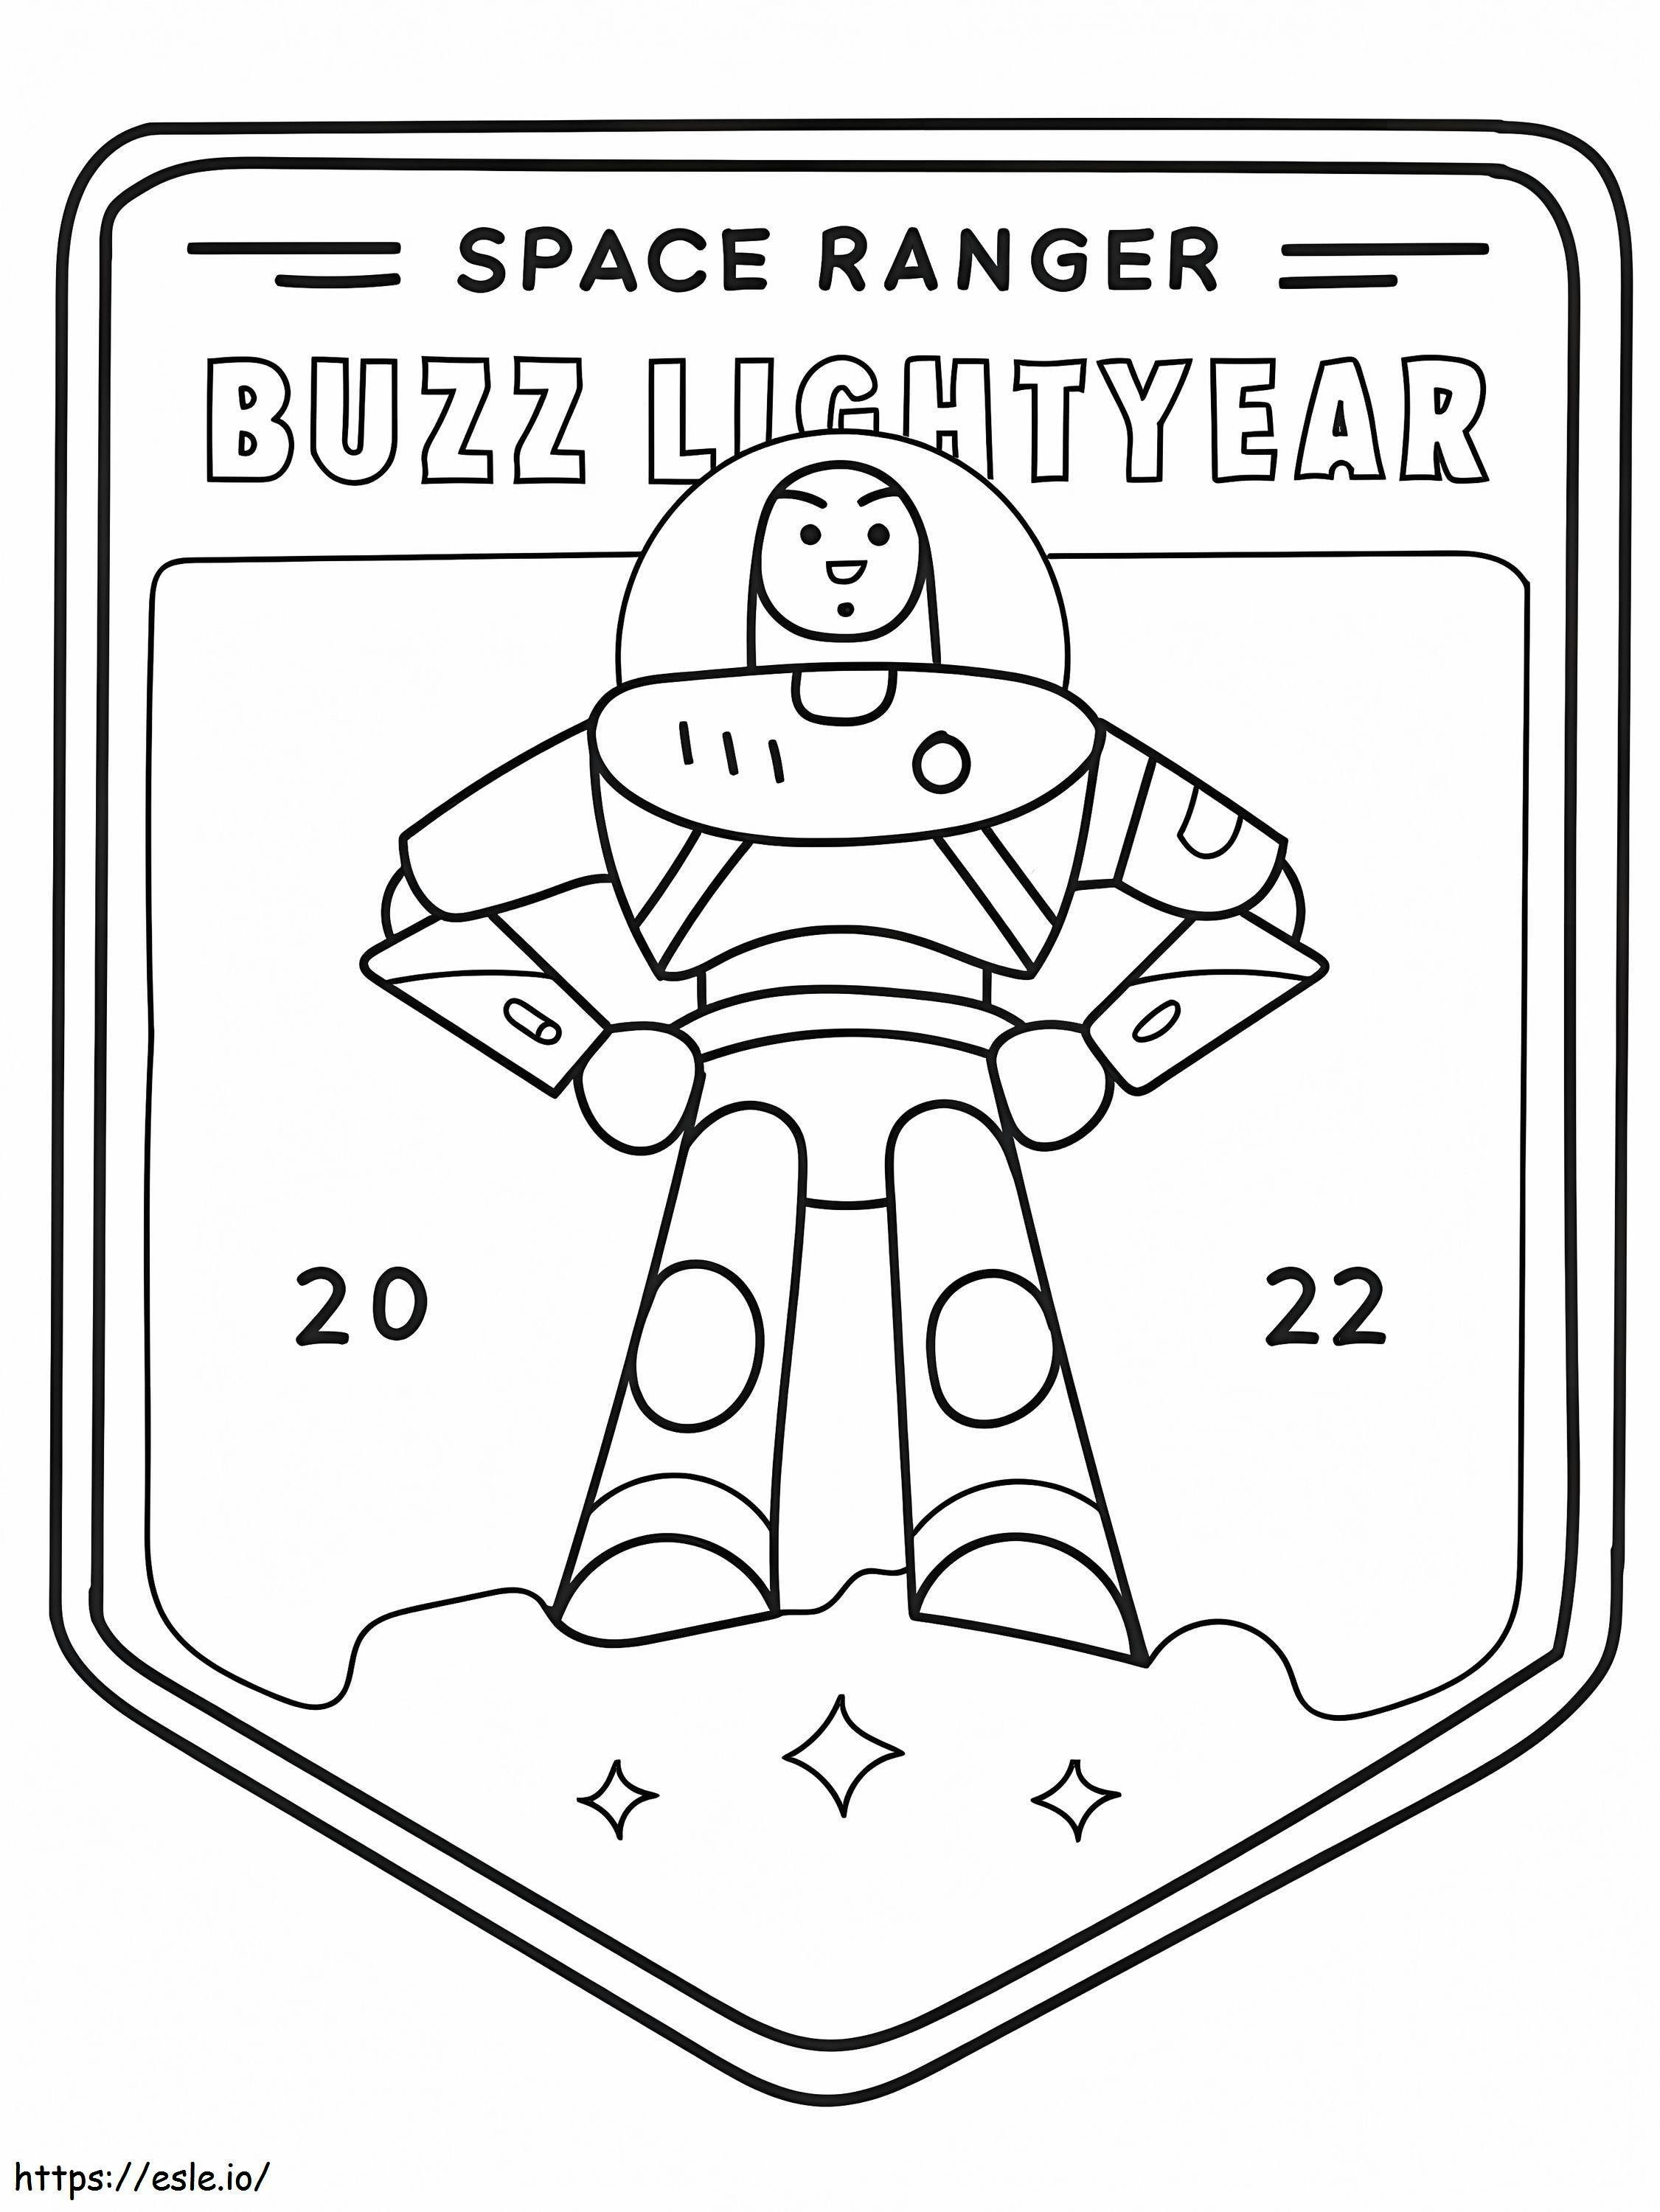 Buzz Lightyear-badge kleurplaat kleurplaat